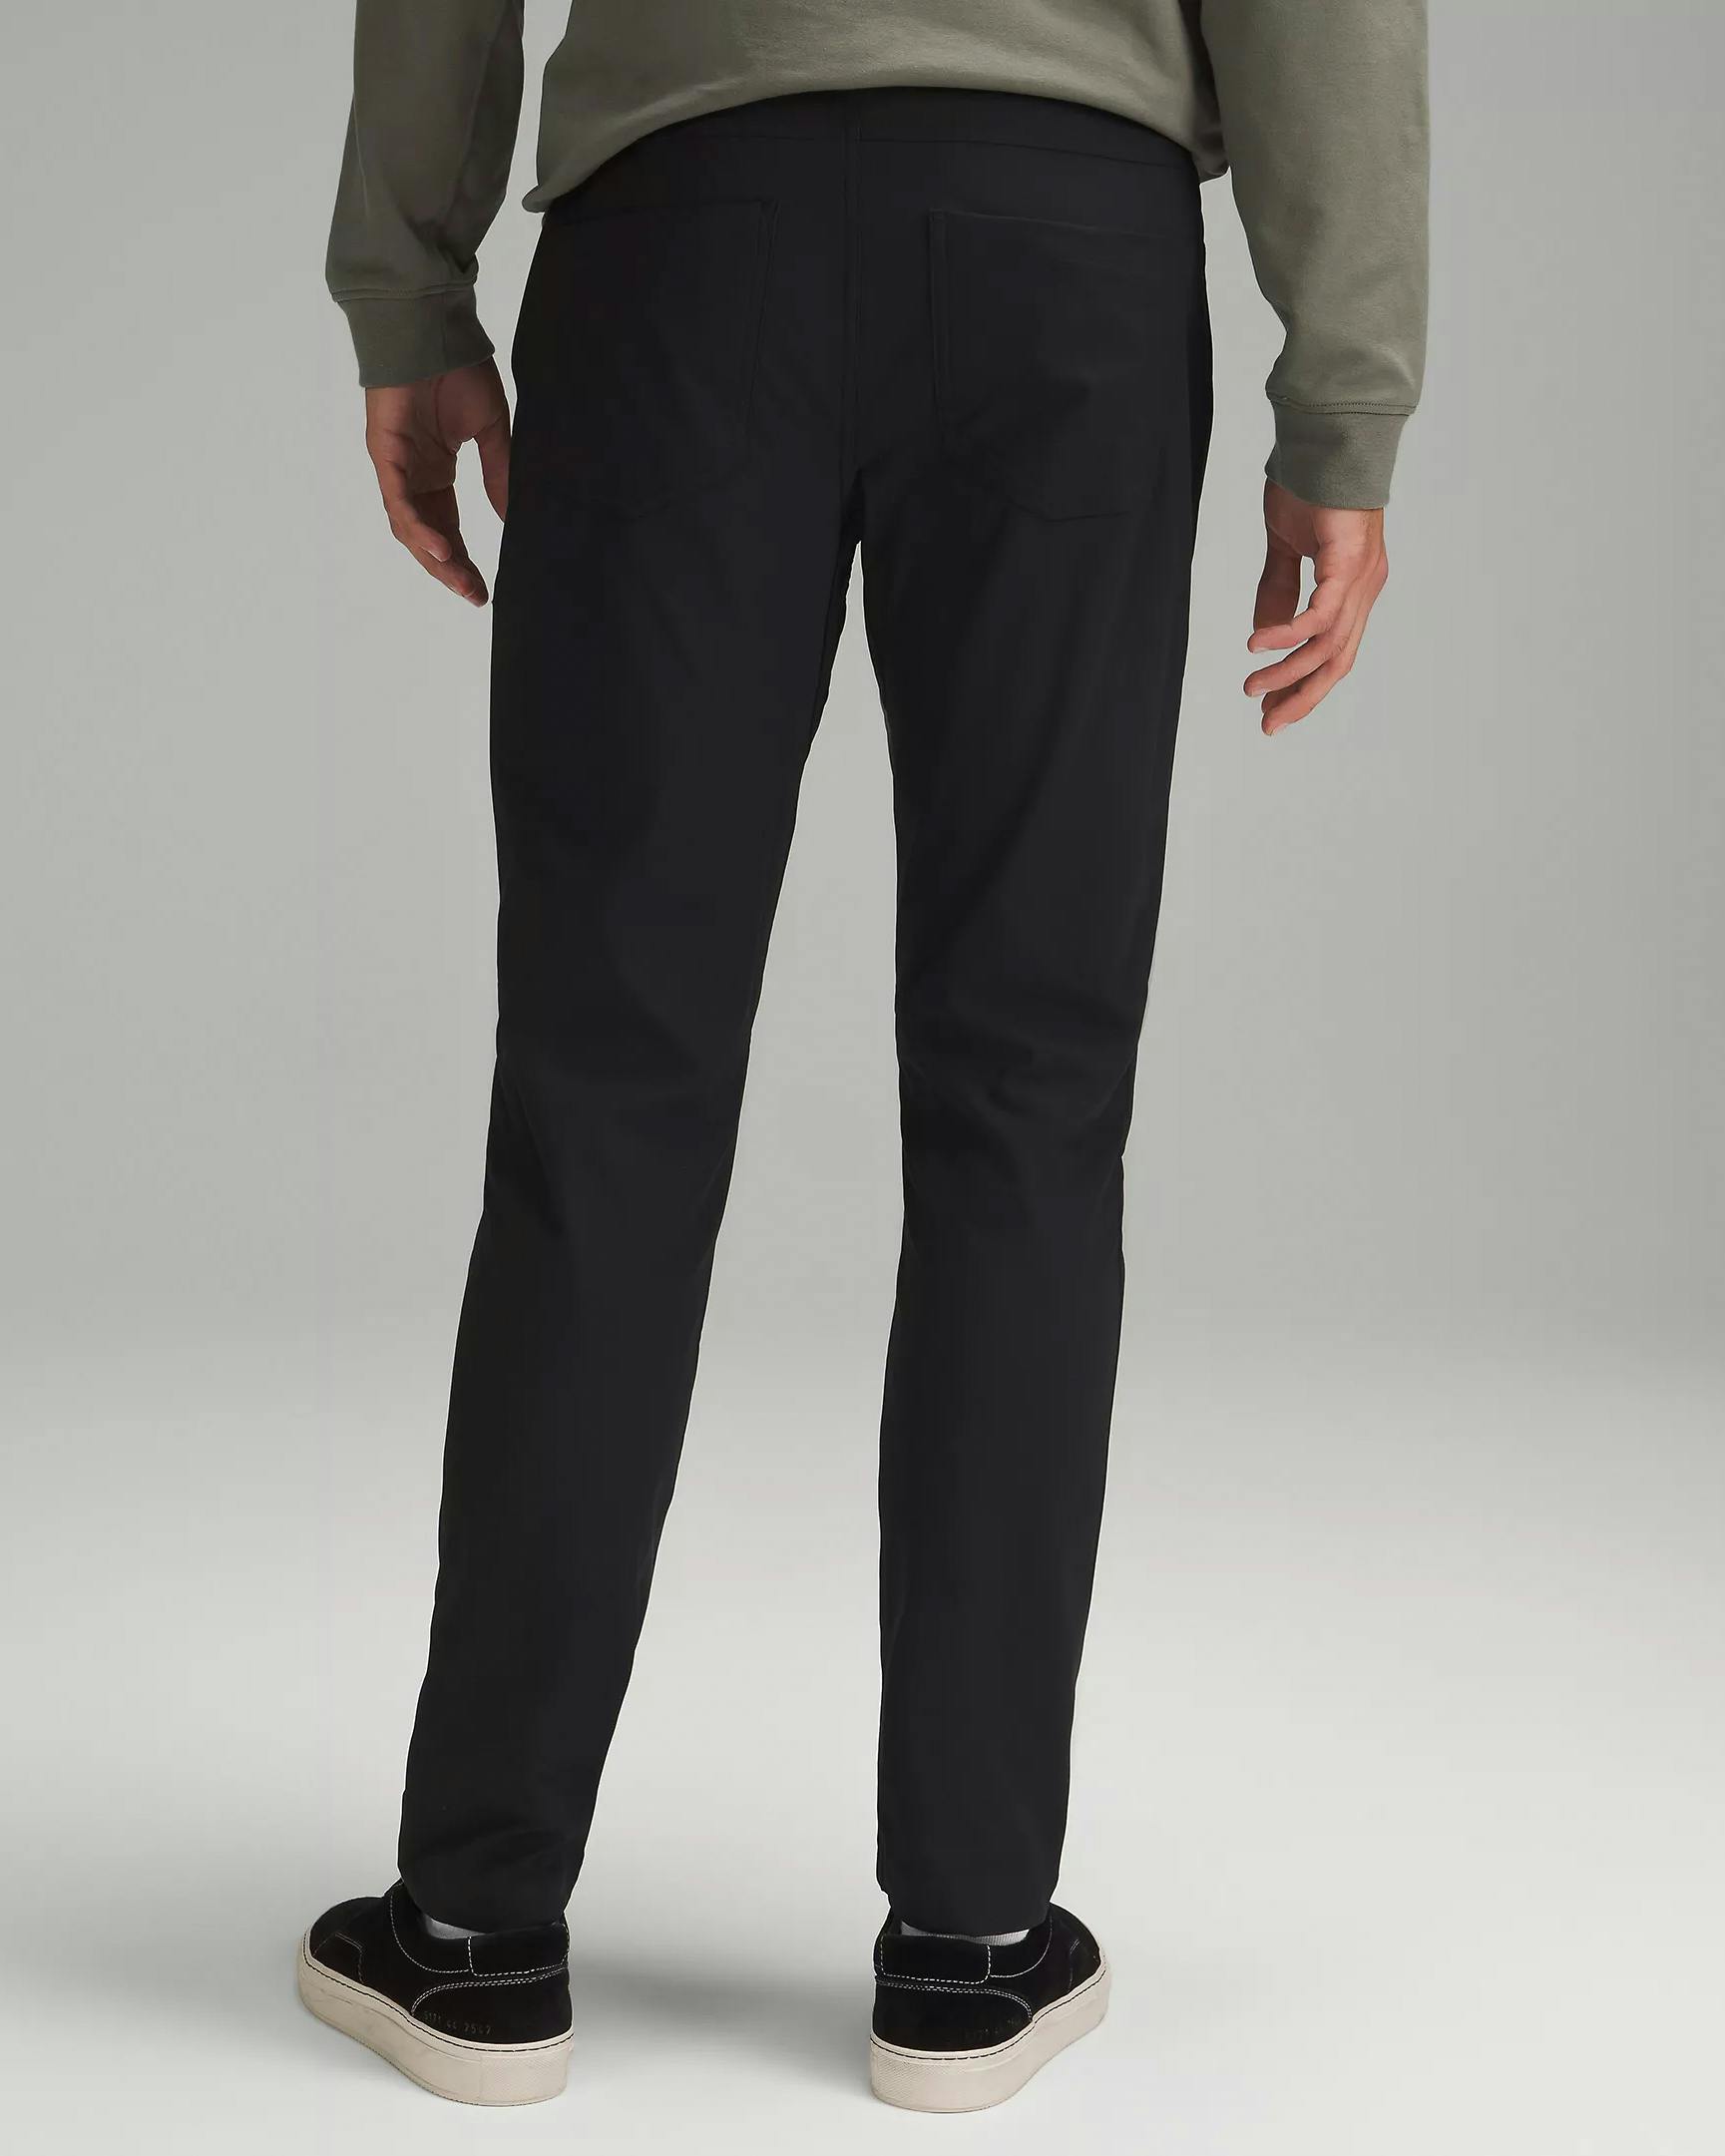 lululemon ABC Slim Fit Pant - Black, Active Pants & Joggers